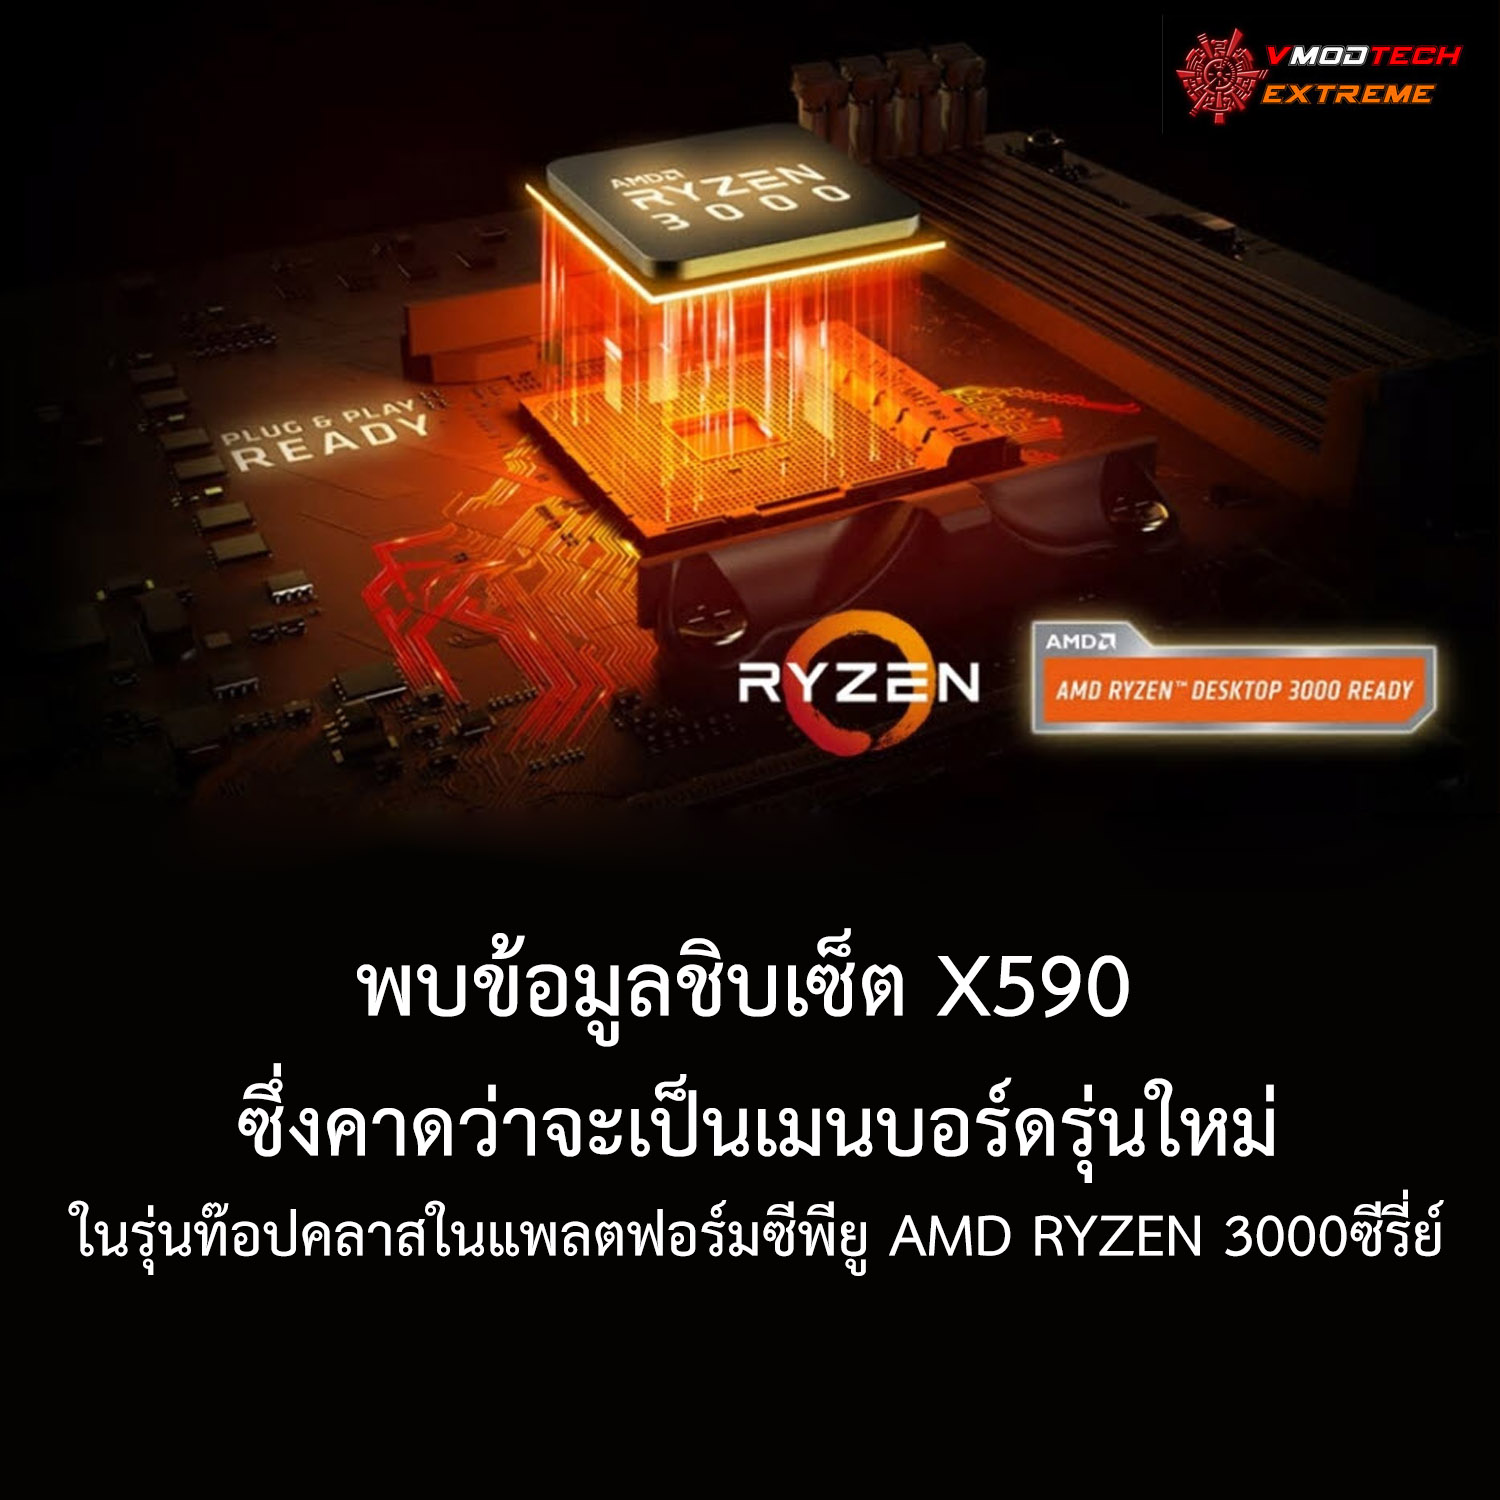 พบข้อมูลชิบเซ็ต X590 ซึ่งคาดว่าจะเป็นเมนบอร์ดรุ่นใหม่ในรุ่นท๊อปคลาสในแพลตฟอร์มซีพียู AMD RYZEN 3000ซีรี่ย์